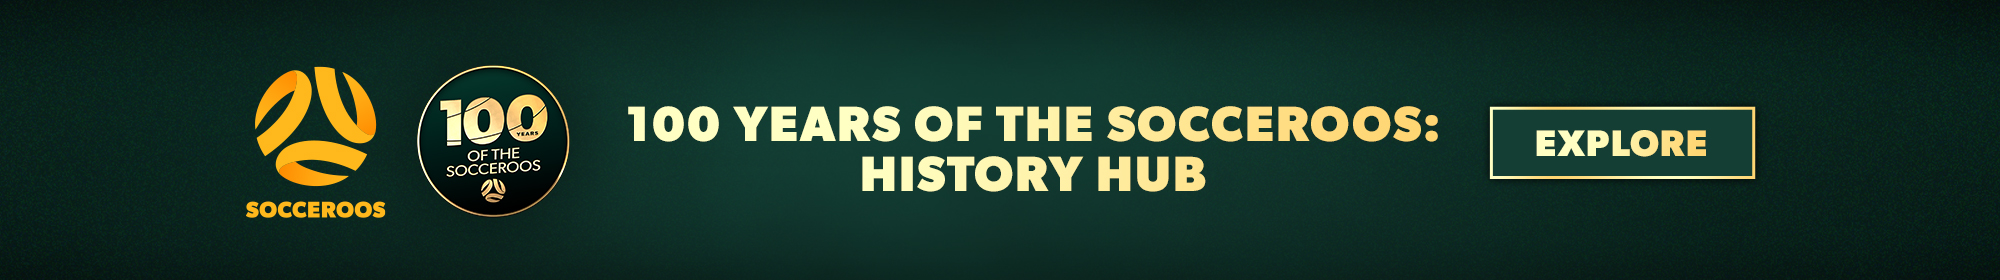 100 Years History Hub Thin Banner